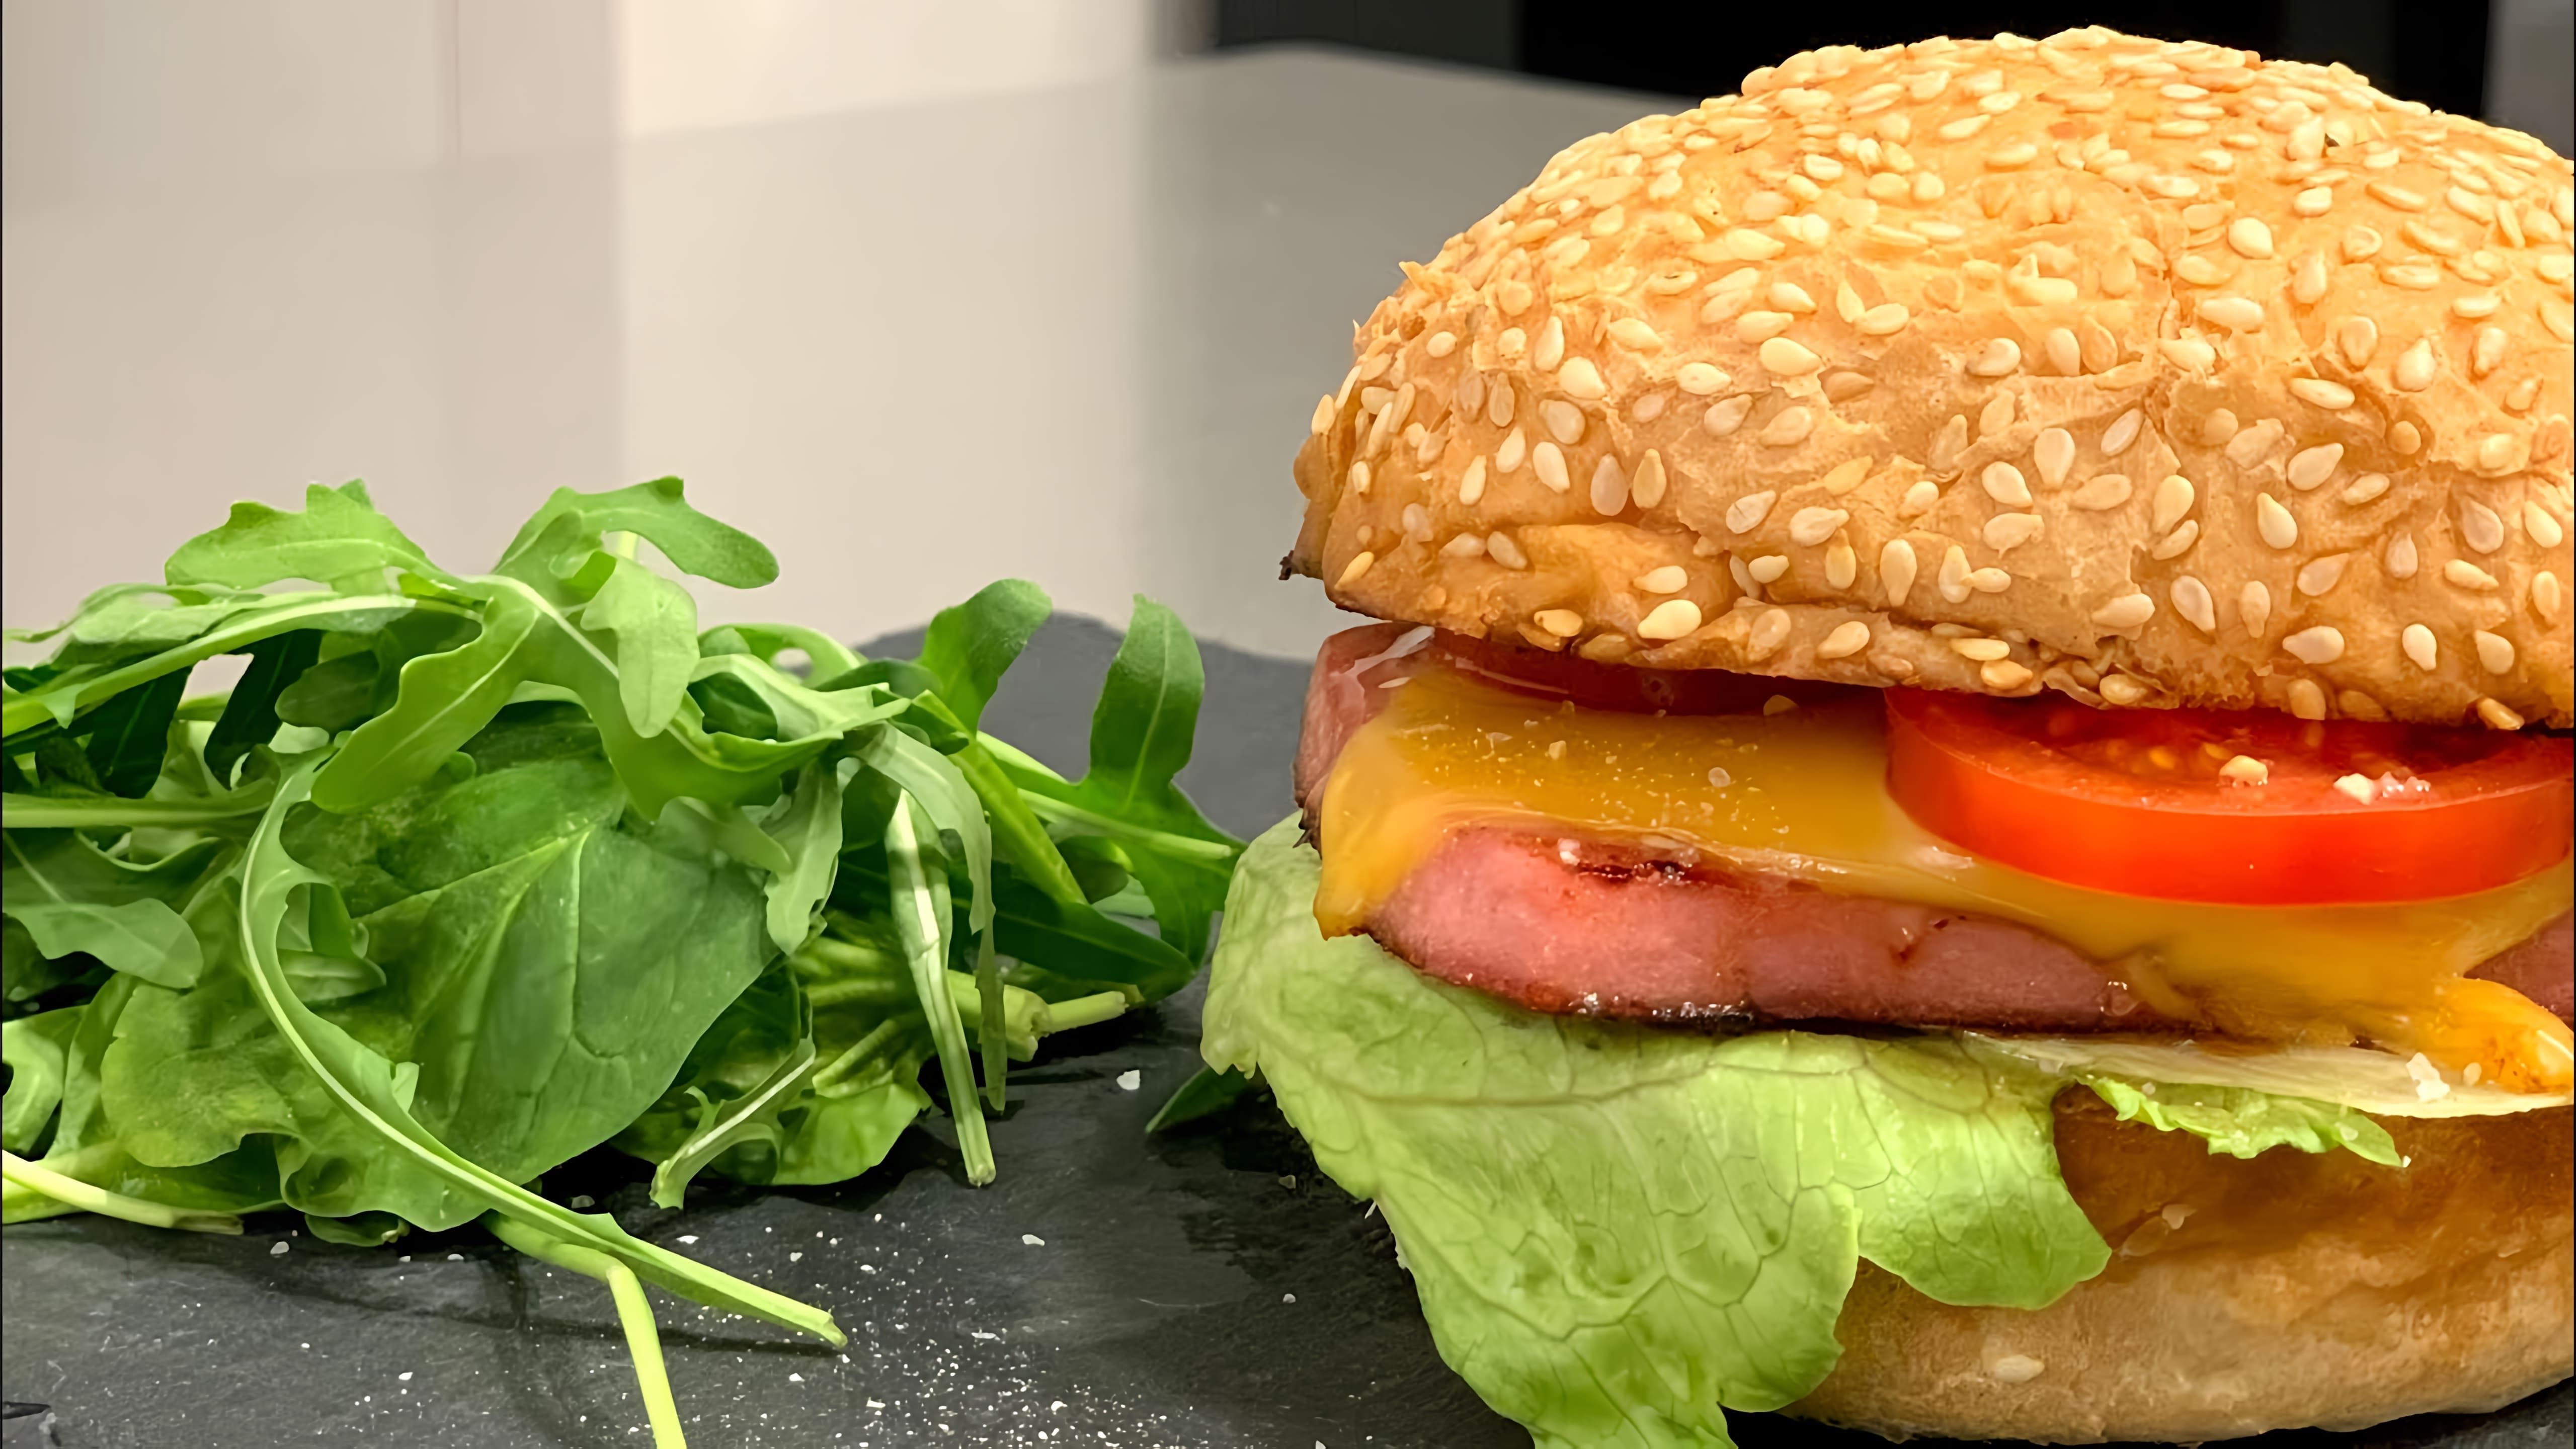 В этом видео демонстрируется процесс приготовления домашнего гамбургера с колбасой, сыром, помидором и салатом Айсберг